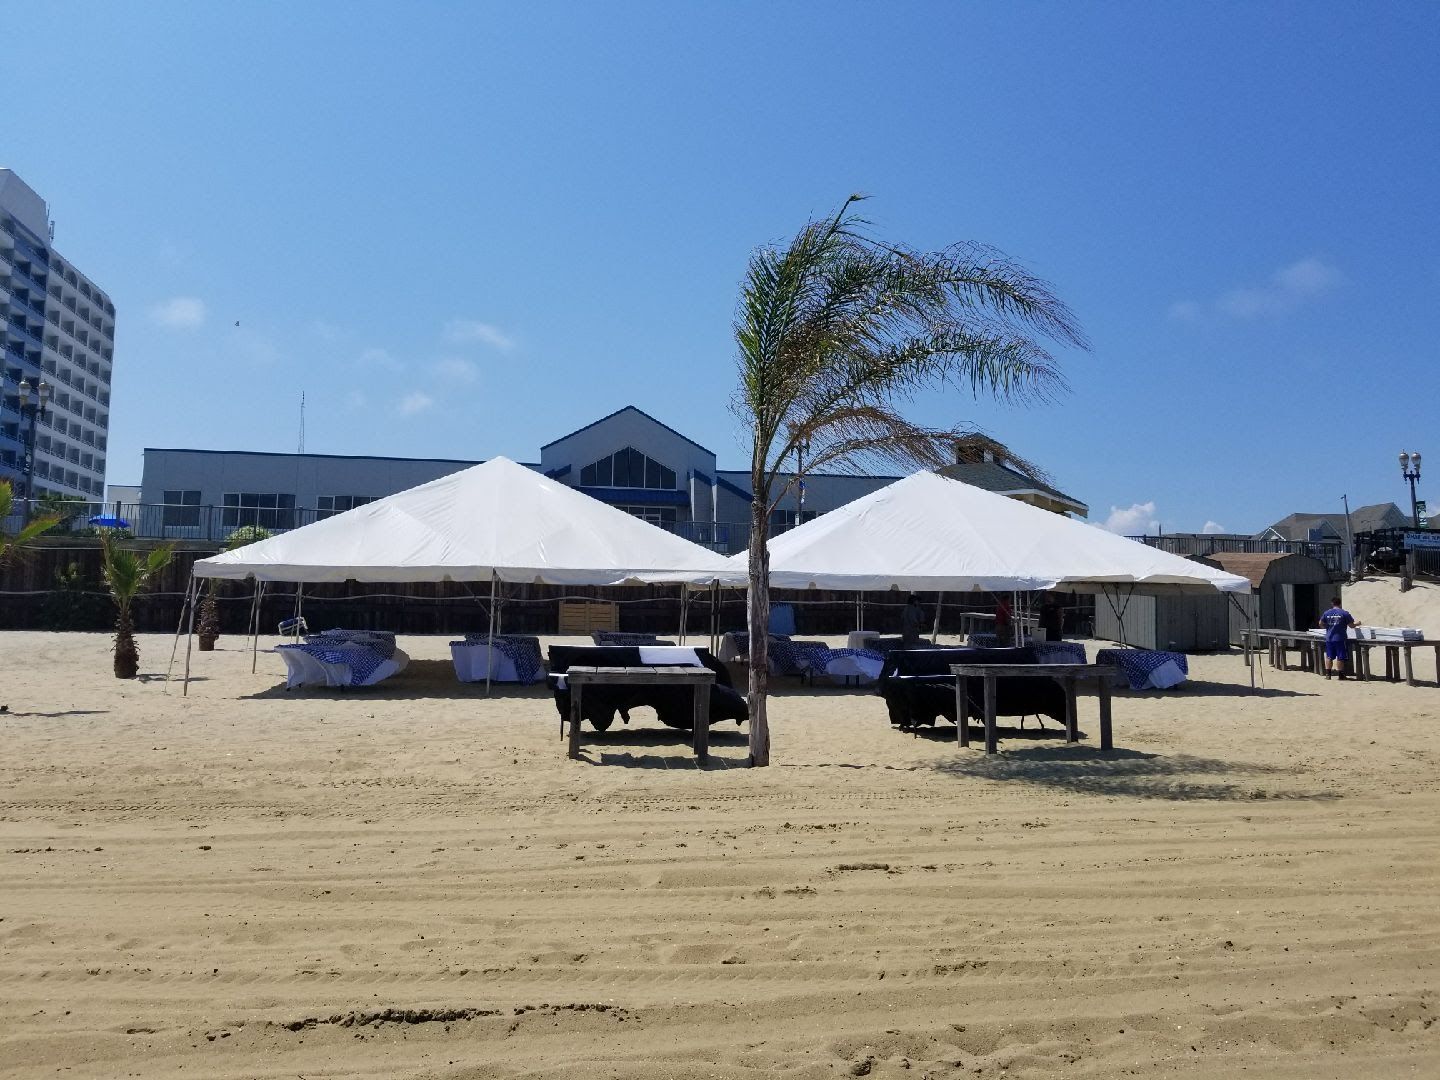 A white tent near the beach side